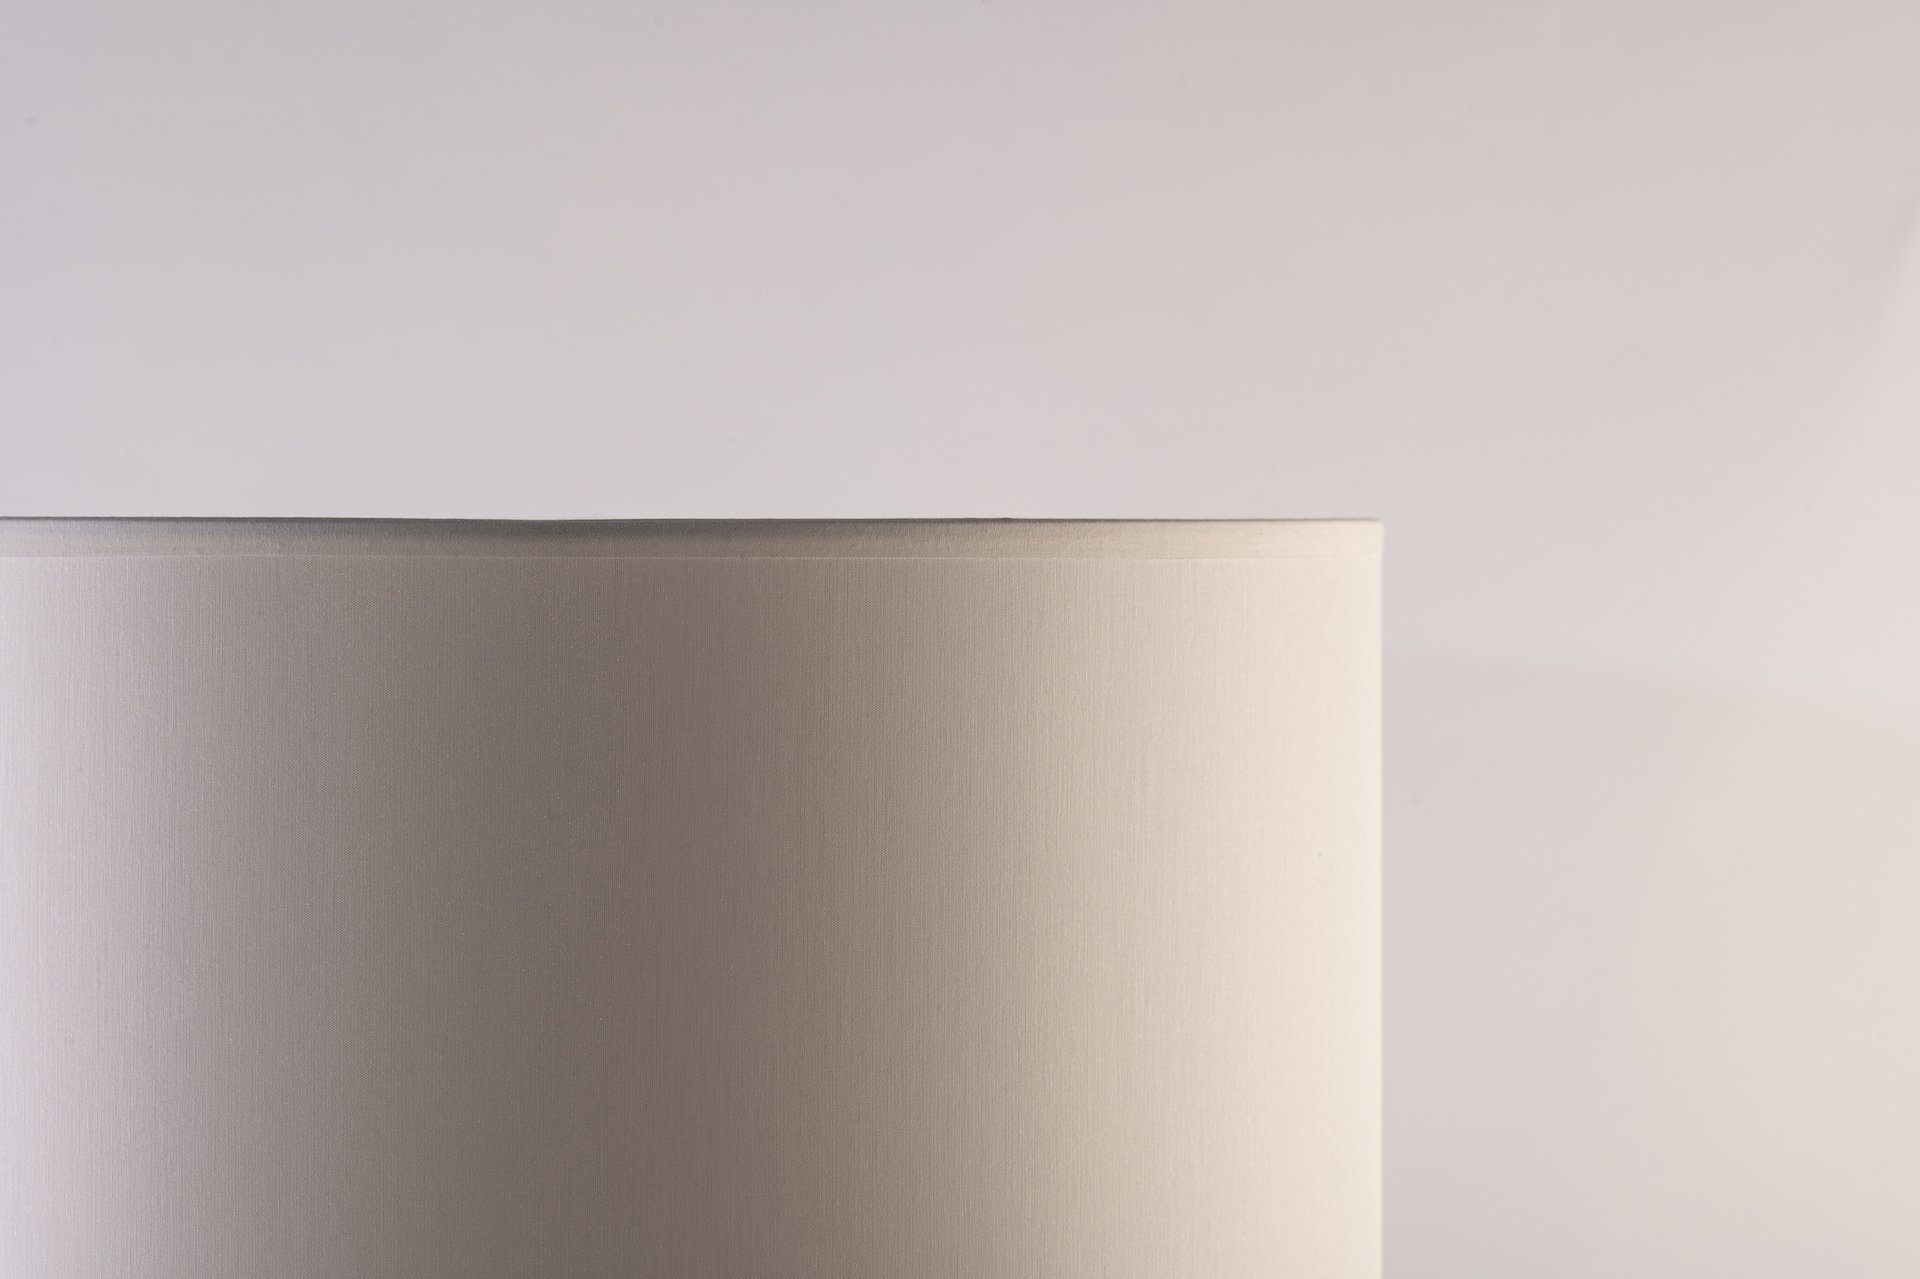 marmortrend Sehnsucht nach Einzigartigkeit Nachttischlampe marmortrend  Eleganz Tischlampe